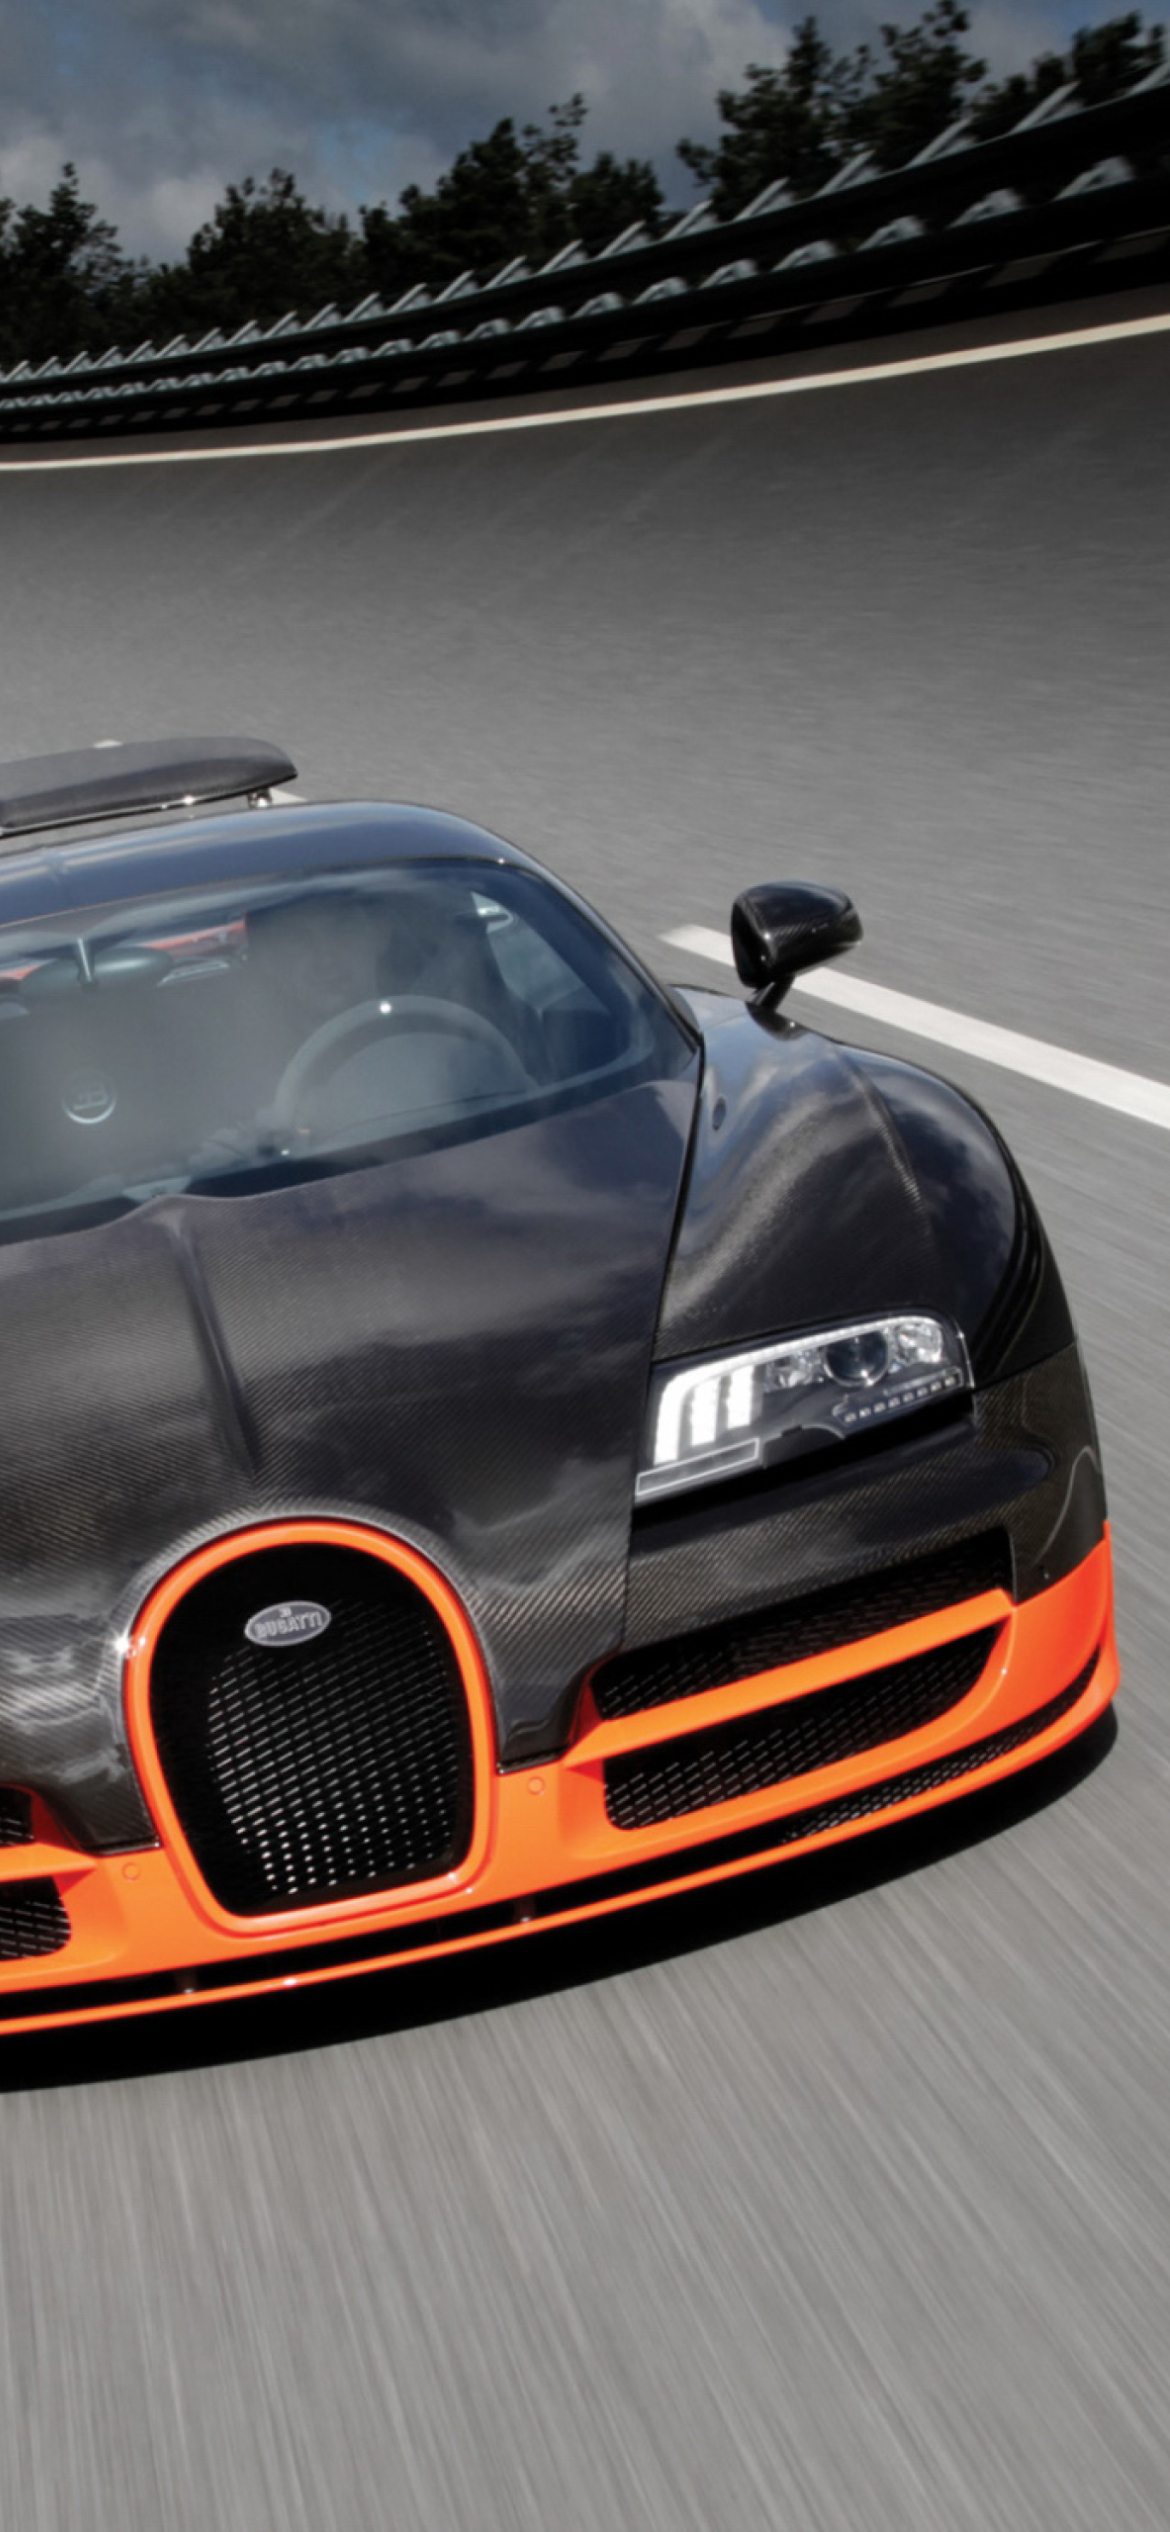 Bugatti Veyron 16-4 - Fondos de pantalla gratis para iPhone XR